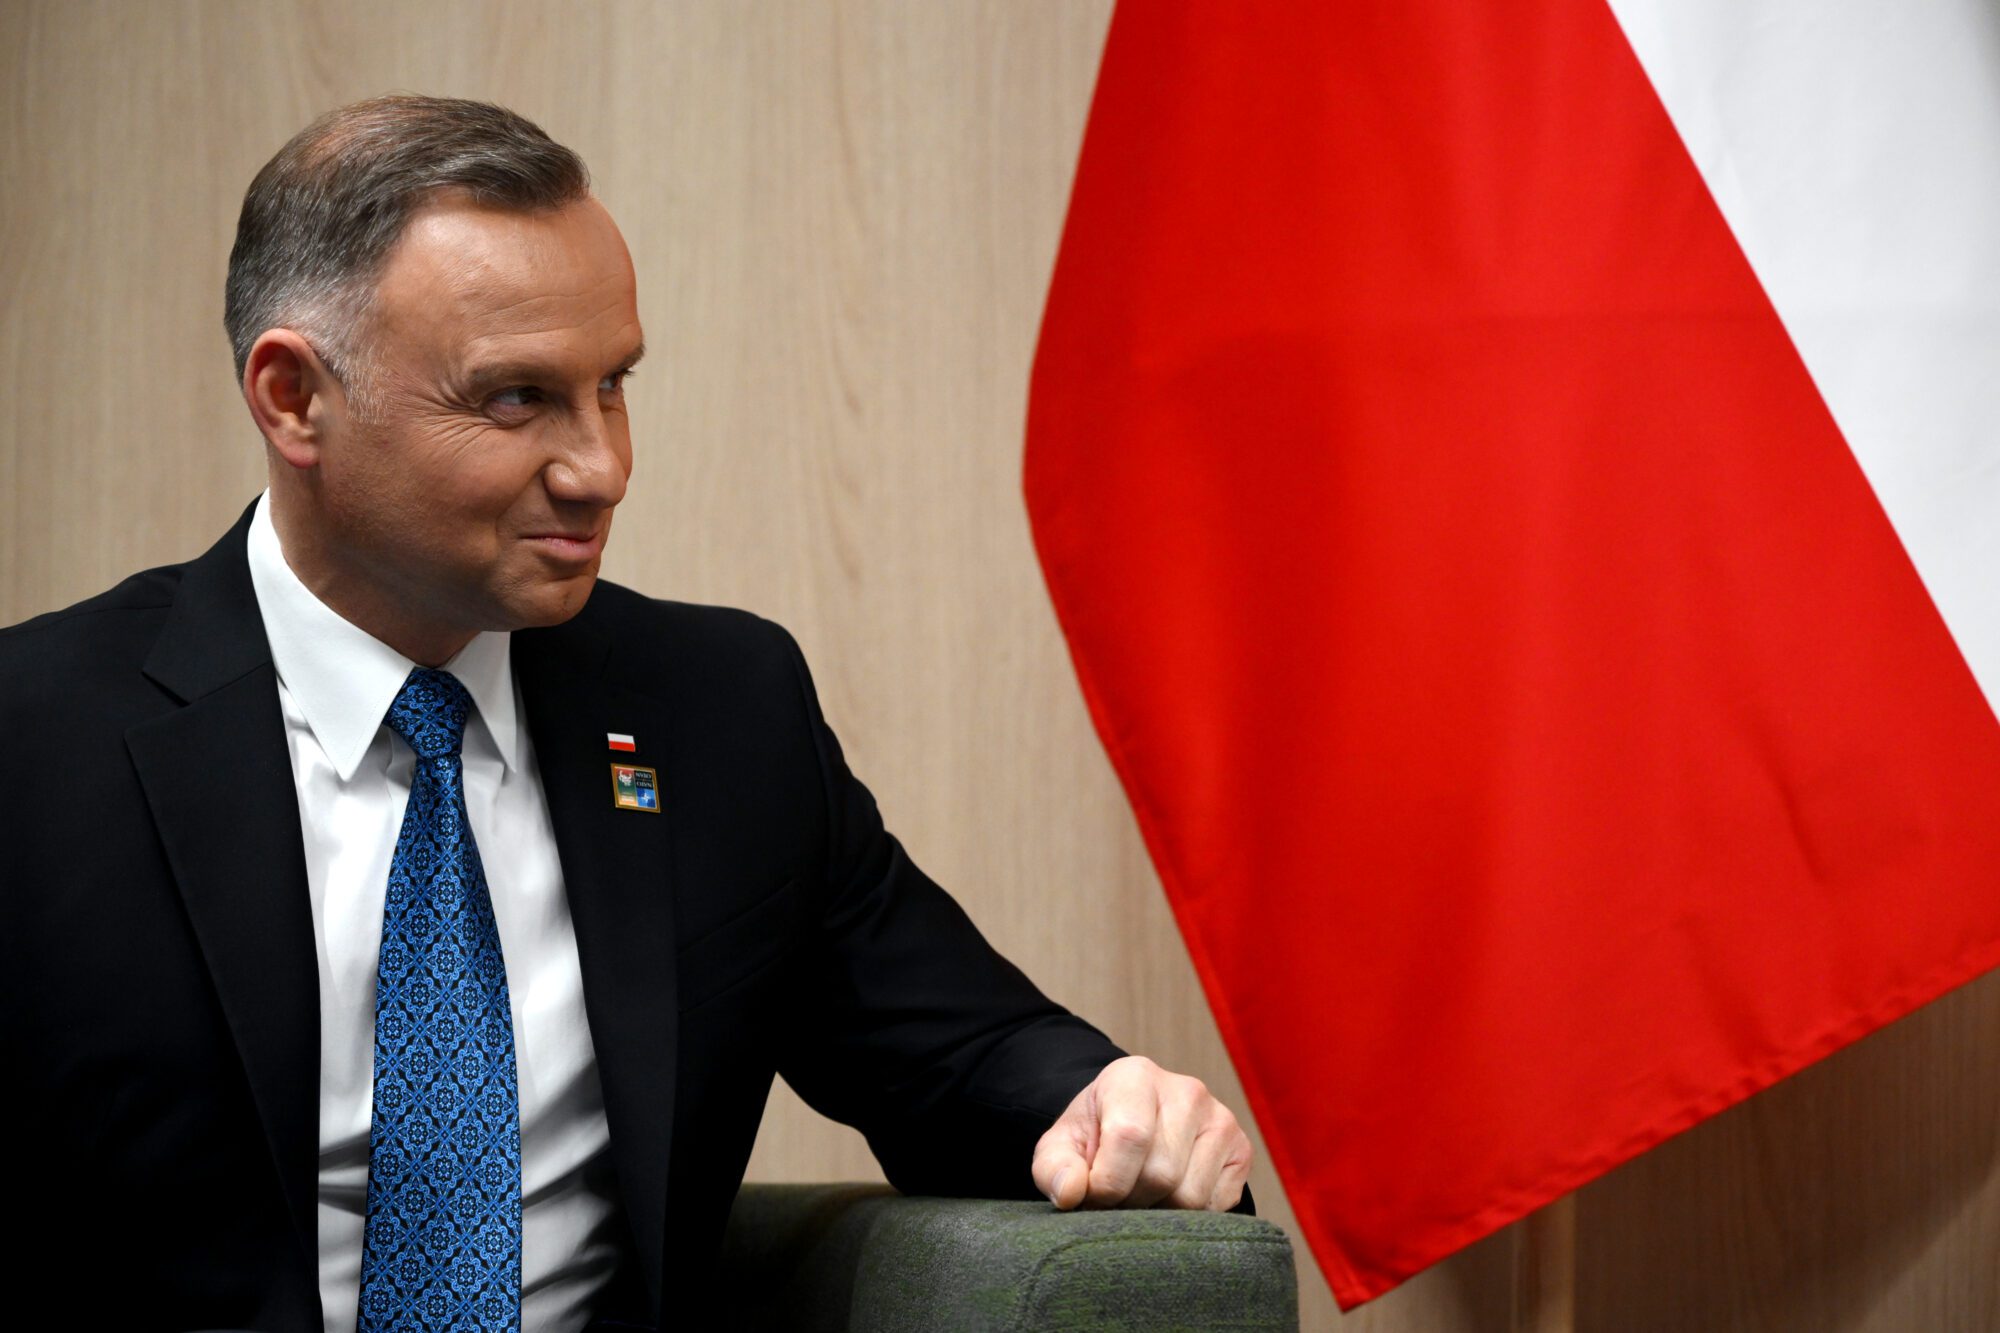 ポーランド大統領 声明発表「ロシアは帝国主義復活の野心を抱いている。米国介入が必要になる前にプーチン大統領を引きずり下ろすべき」